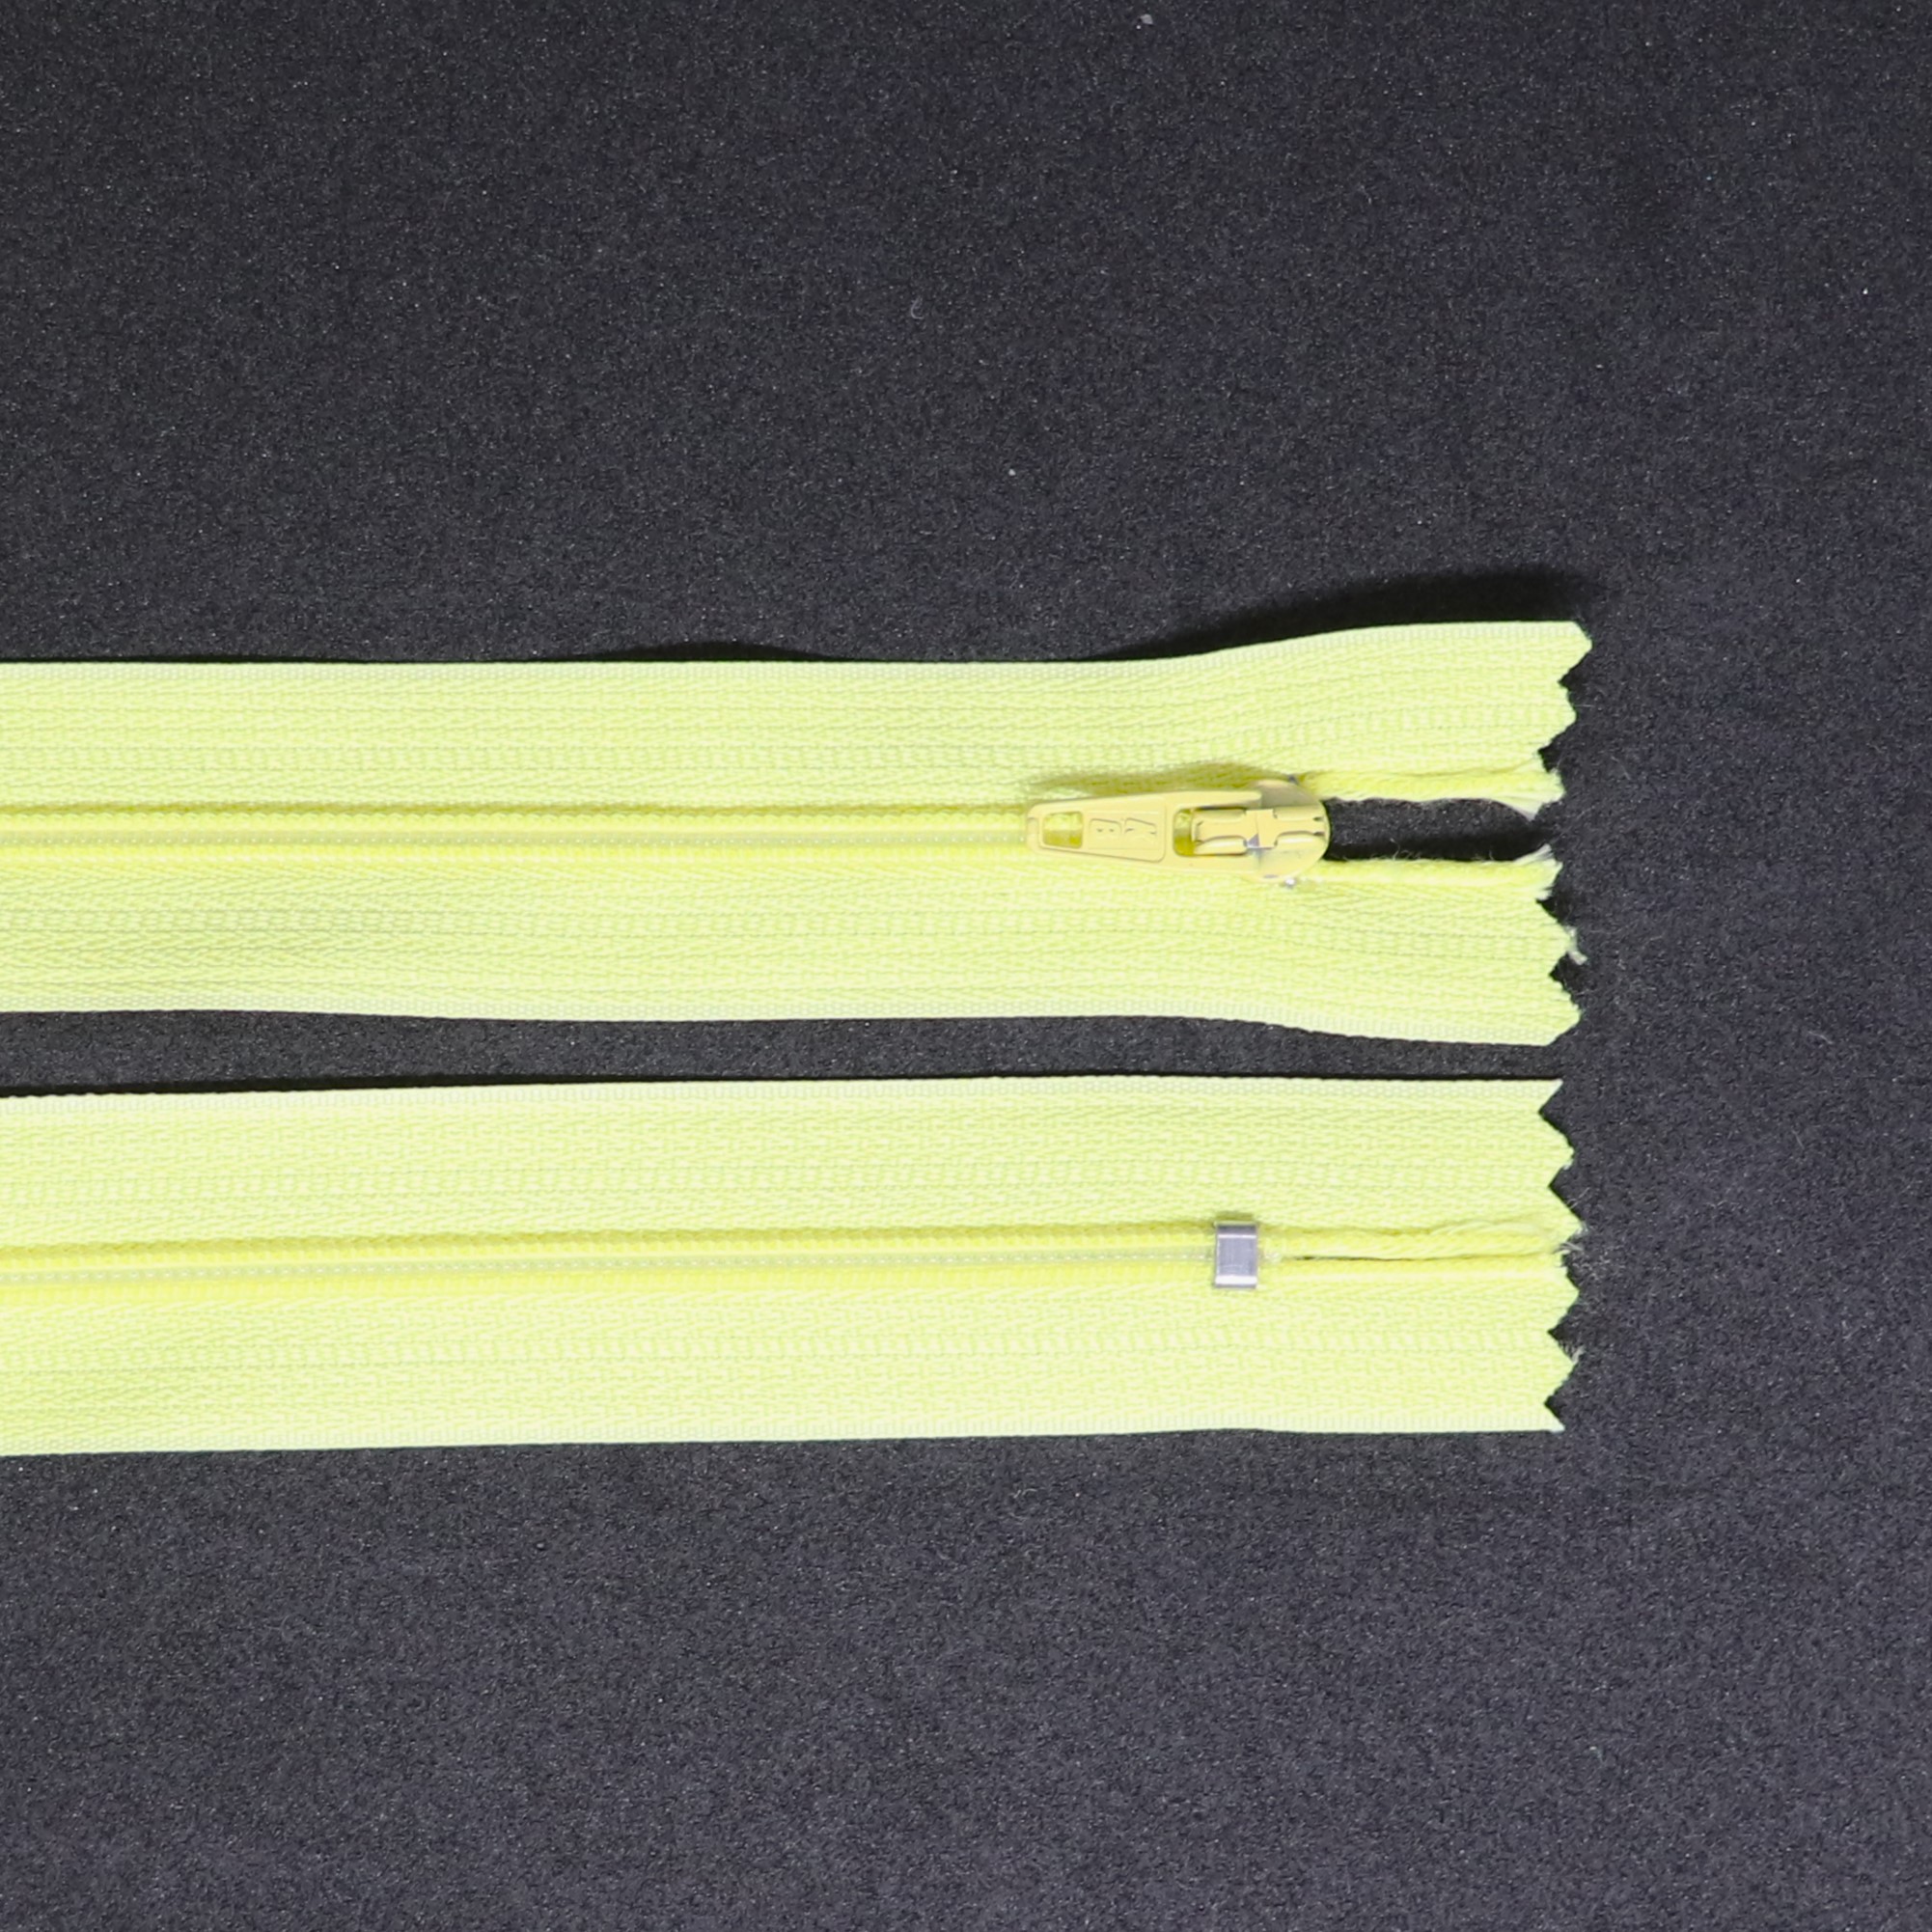 Spirálový zip, šíøe 3 mm, délka 40 cm, žlutá - zvìtšit obrázek